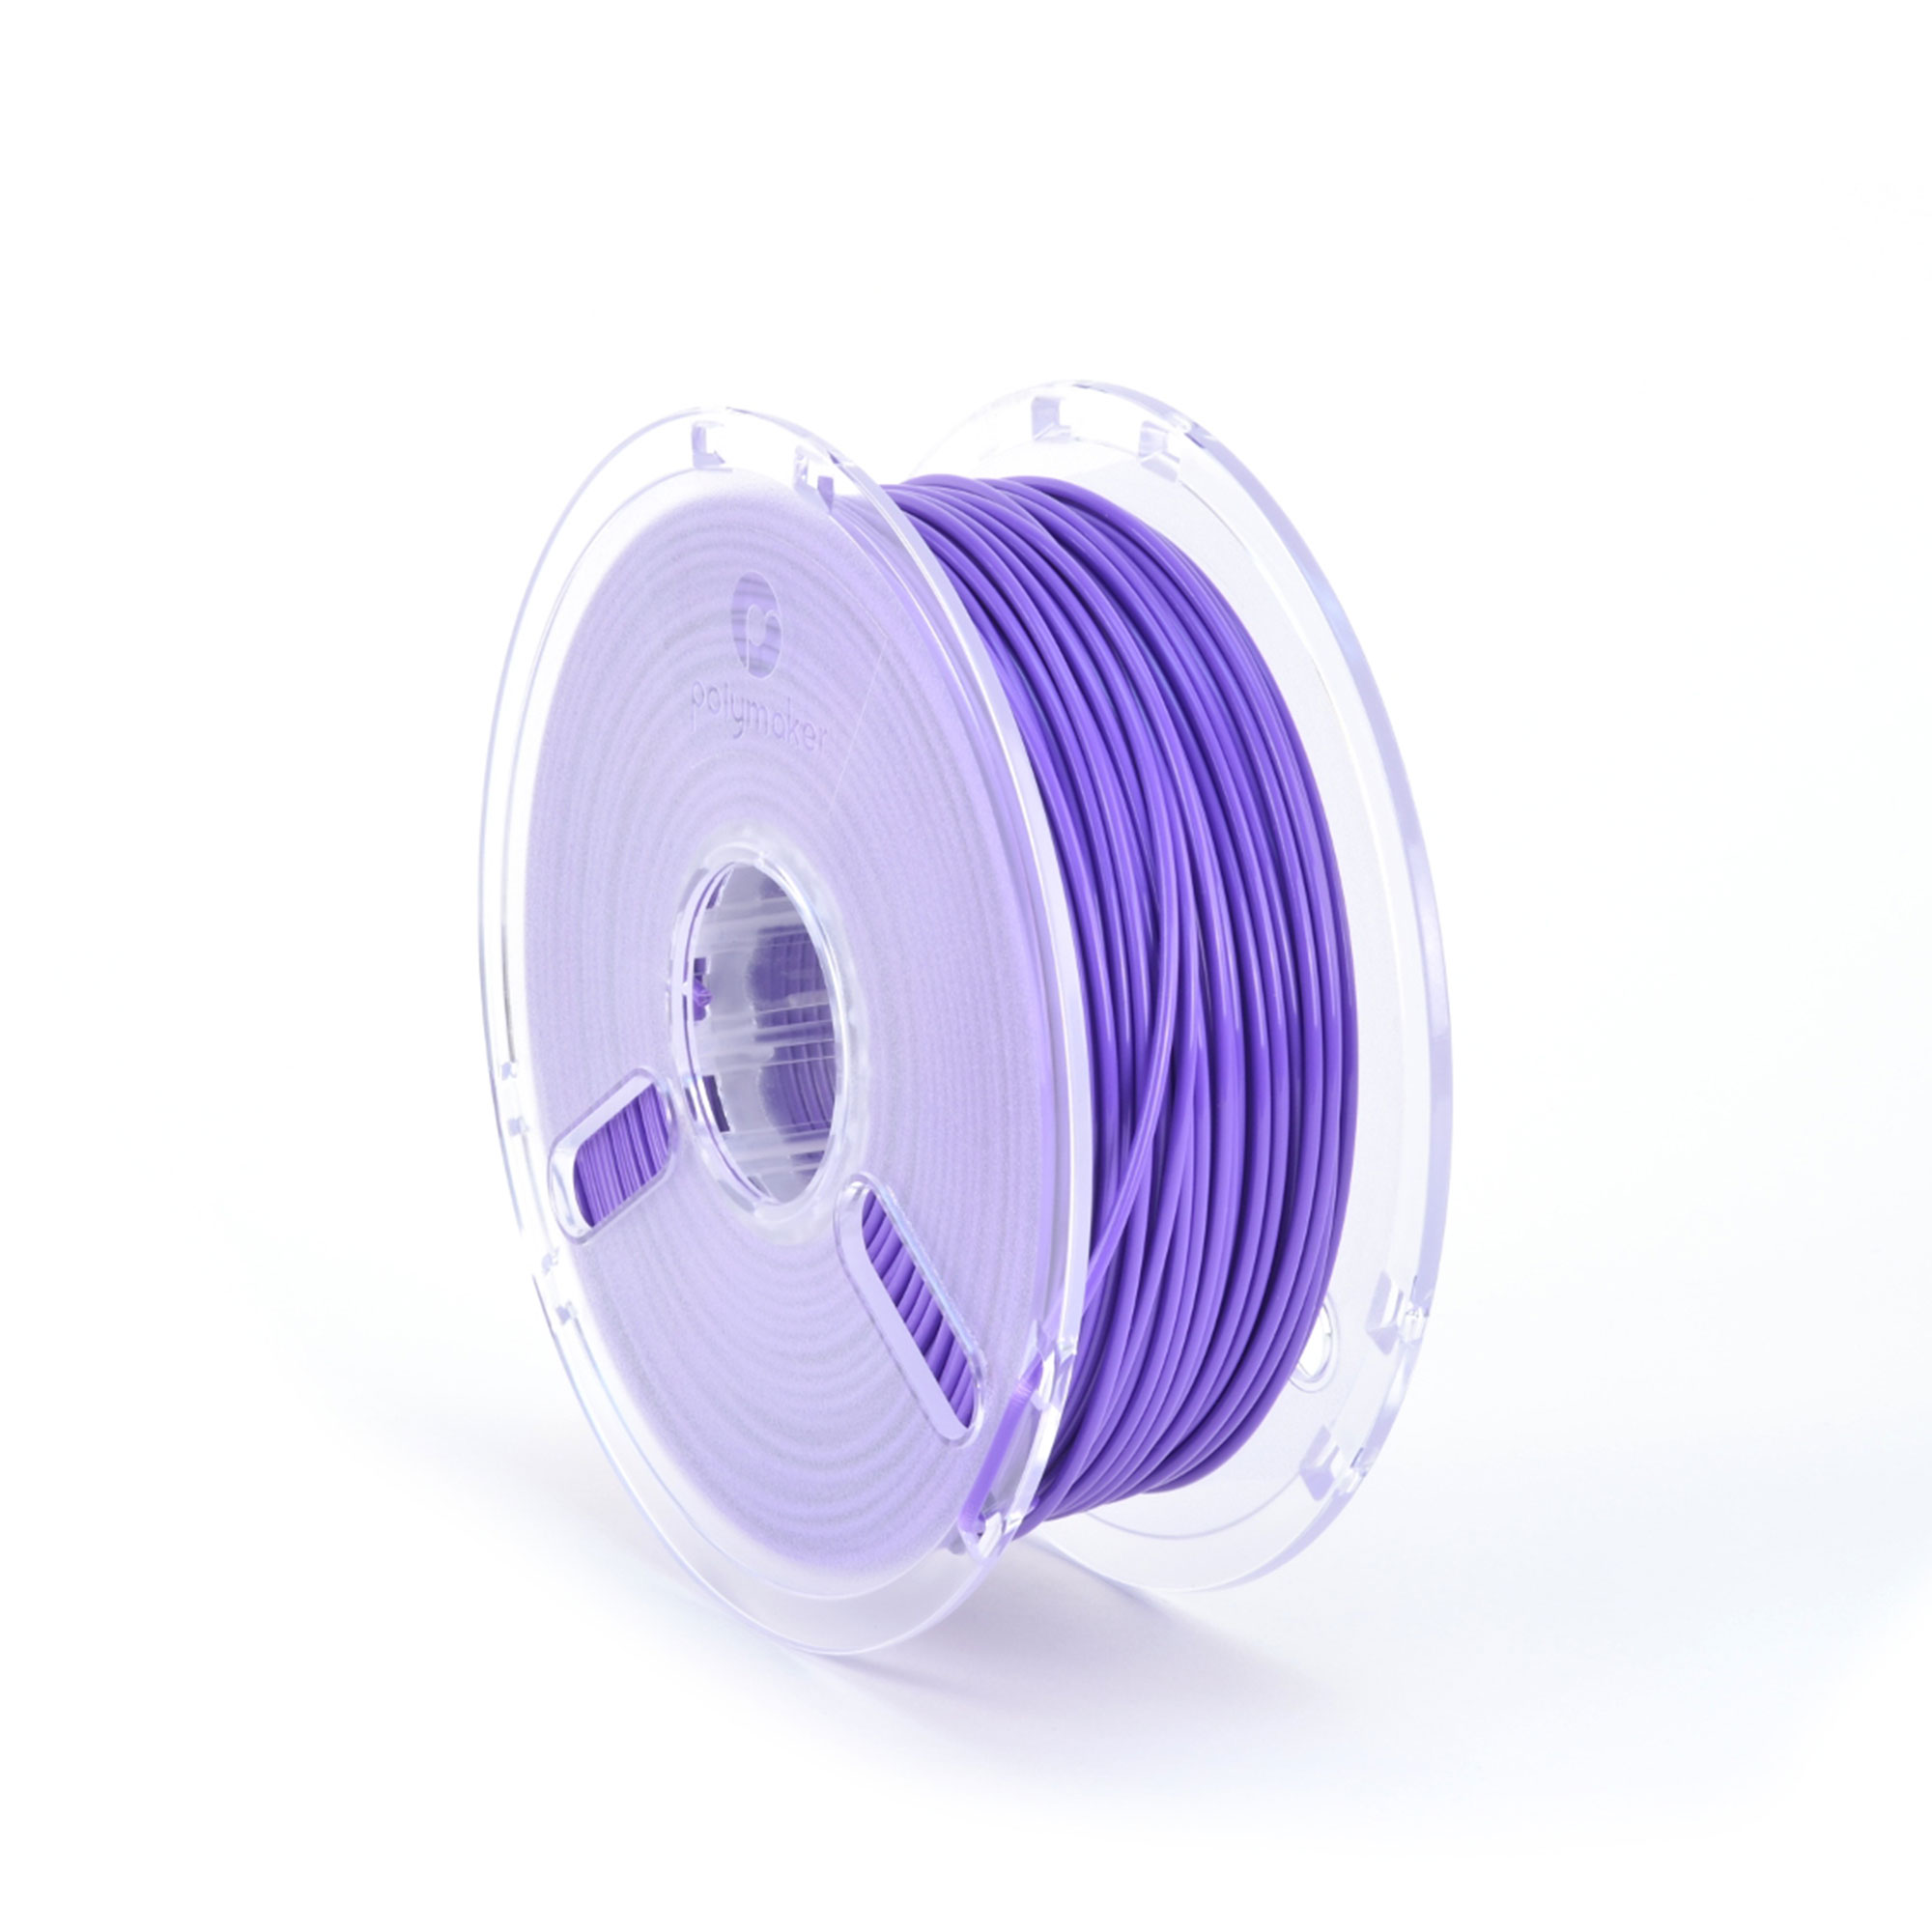 3d Printer Filament True Purple 2.85mm 1kg Reel